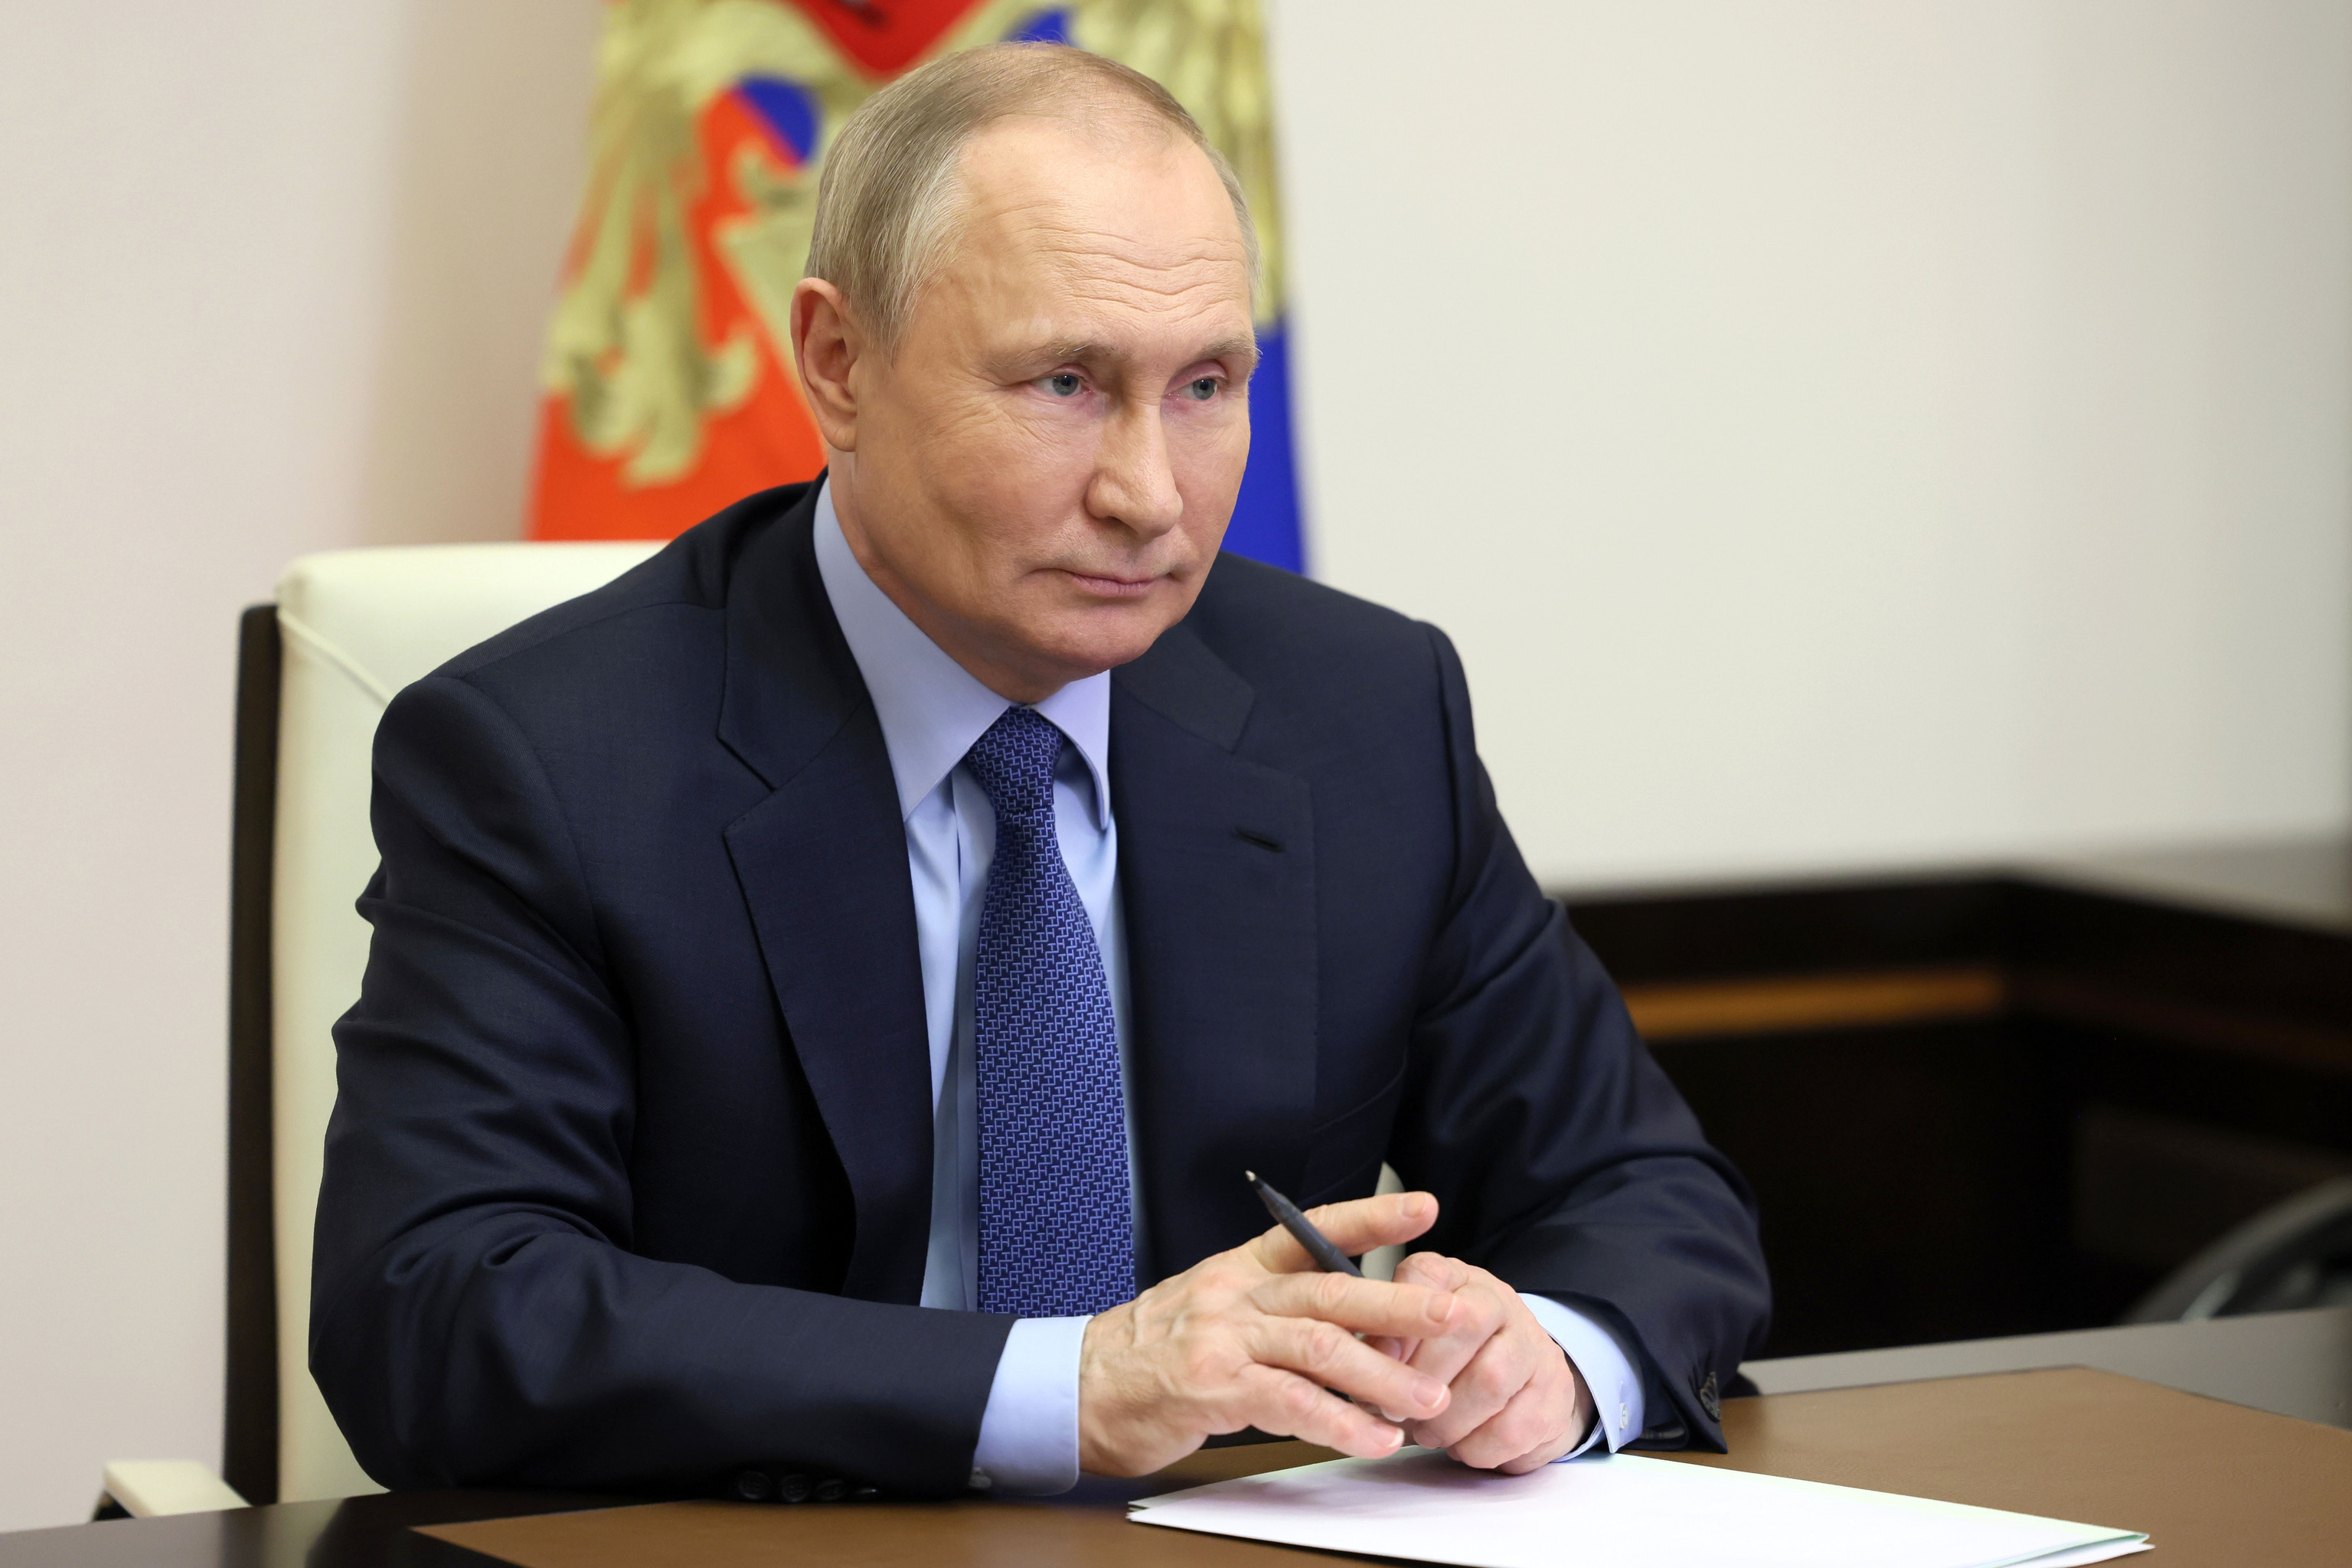 El presidente ruso Vladimir Putin asiste a una reunin por videoconferencia en la residencia de Novo-Ogaryovo en las afueras de Mosc, Rusia, este martes.